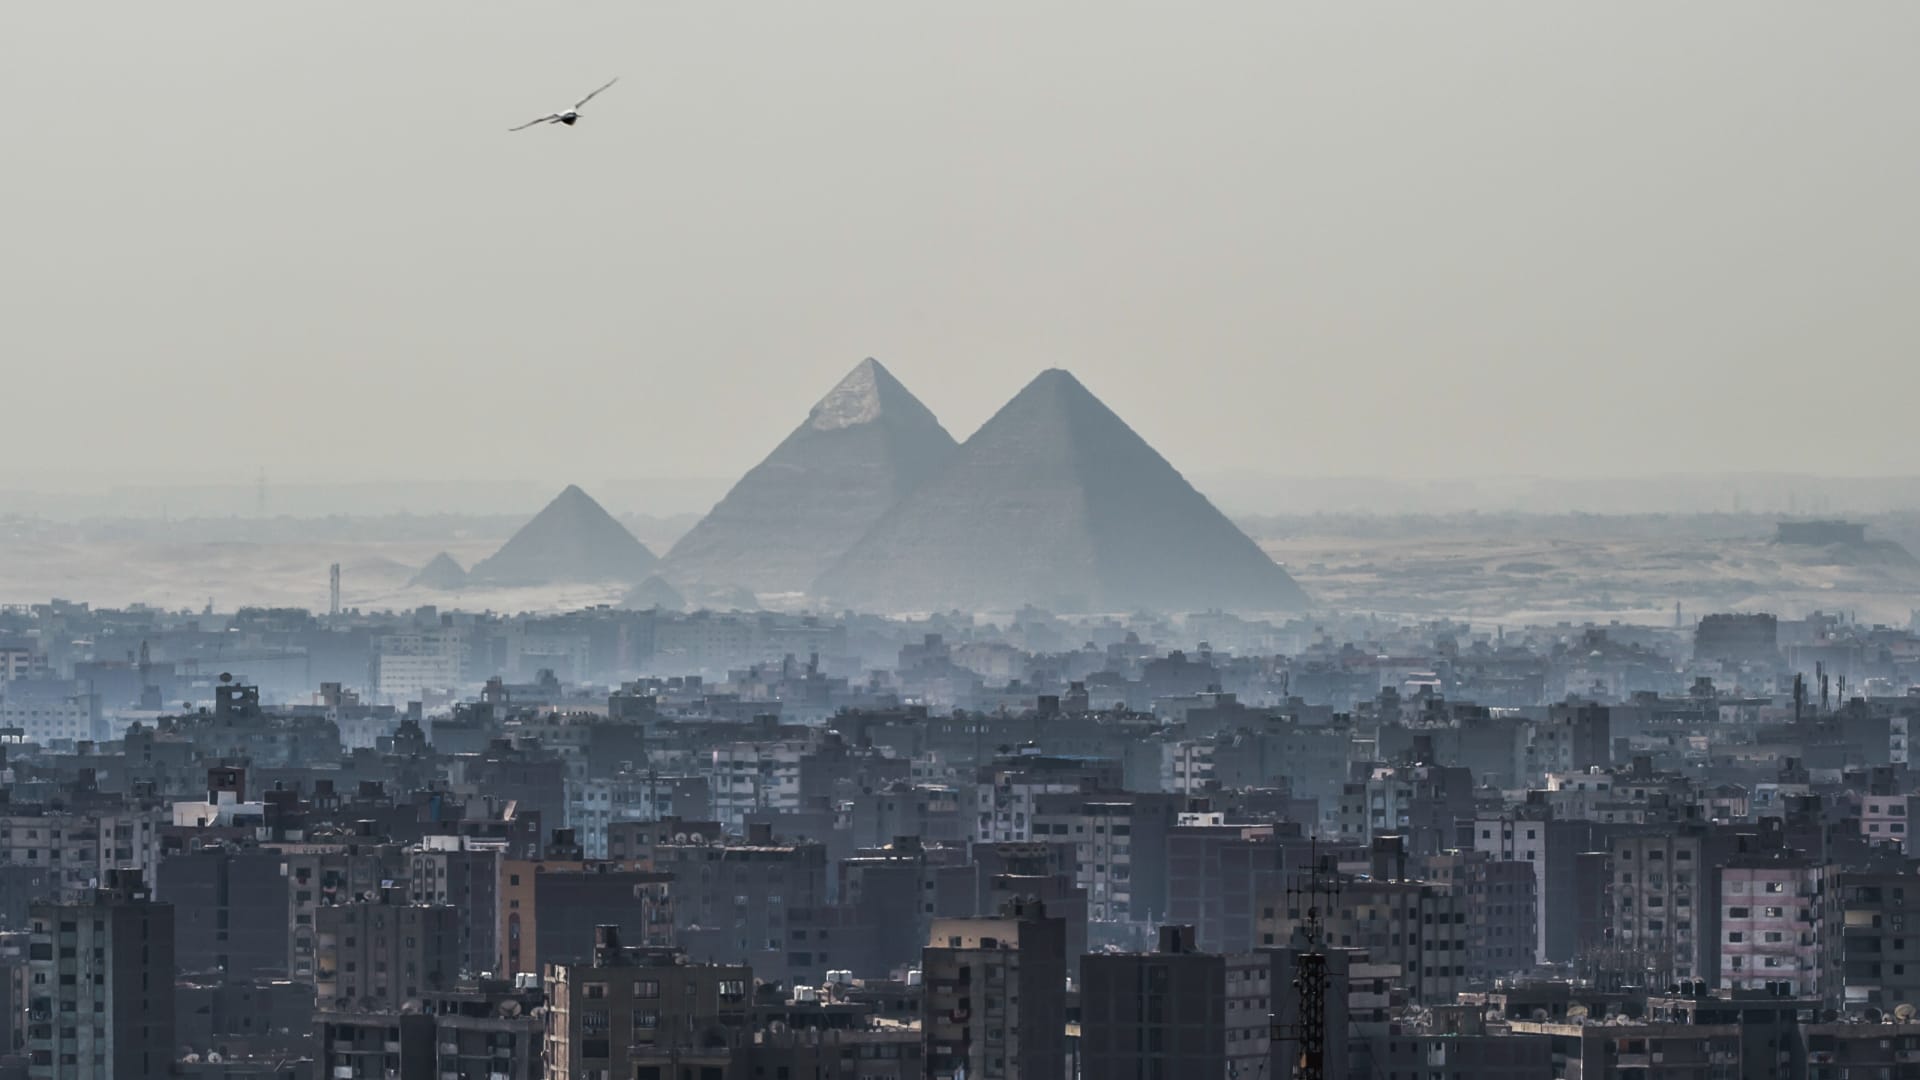 مصر تستعد لإصدار سندات "الساموراي".. وخبراء يوضحون الأهداف